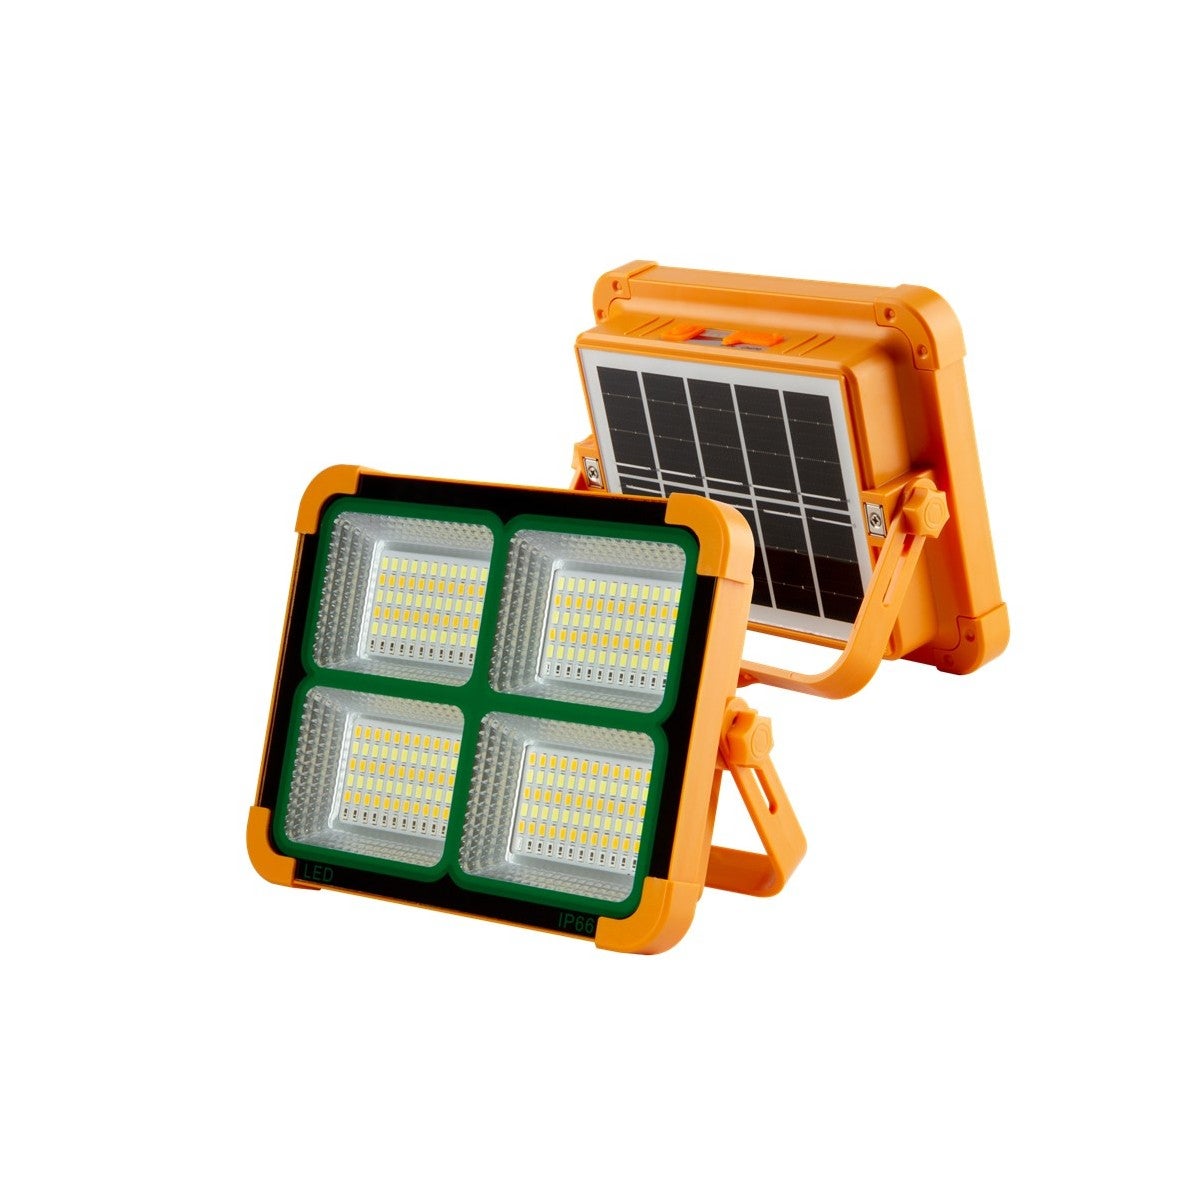 Projecteur solaire camping multifonctions - Un éclairage sympa